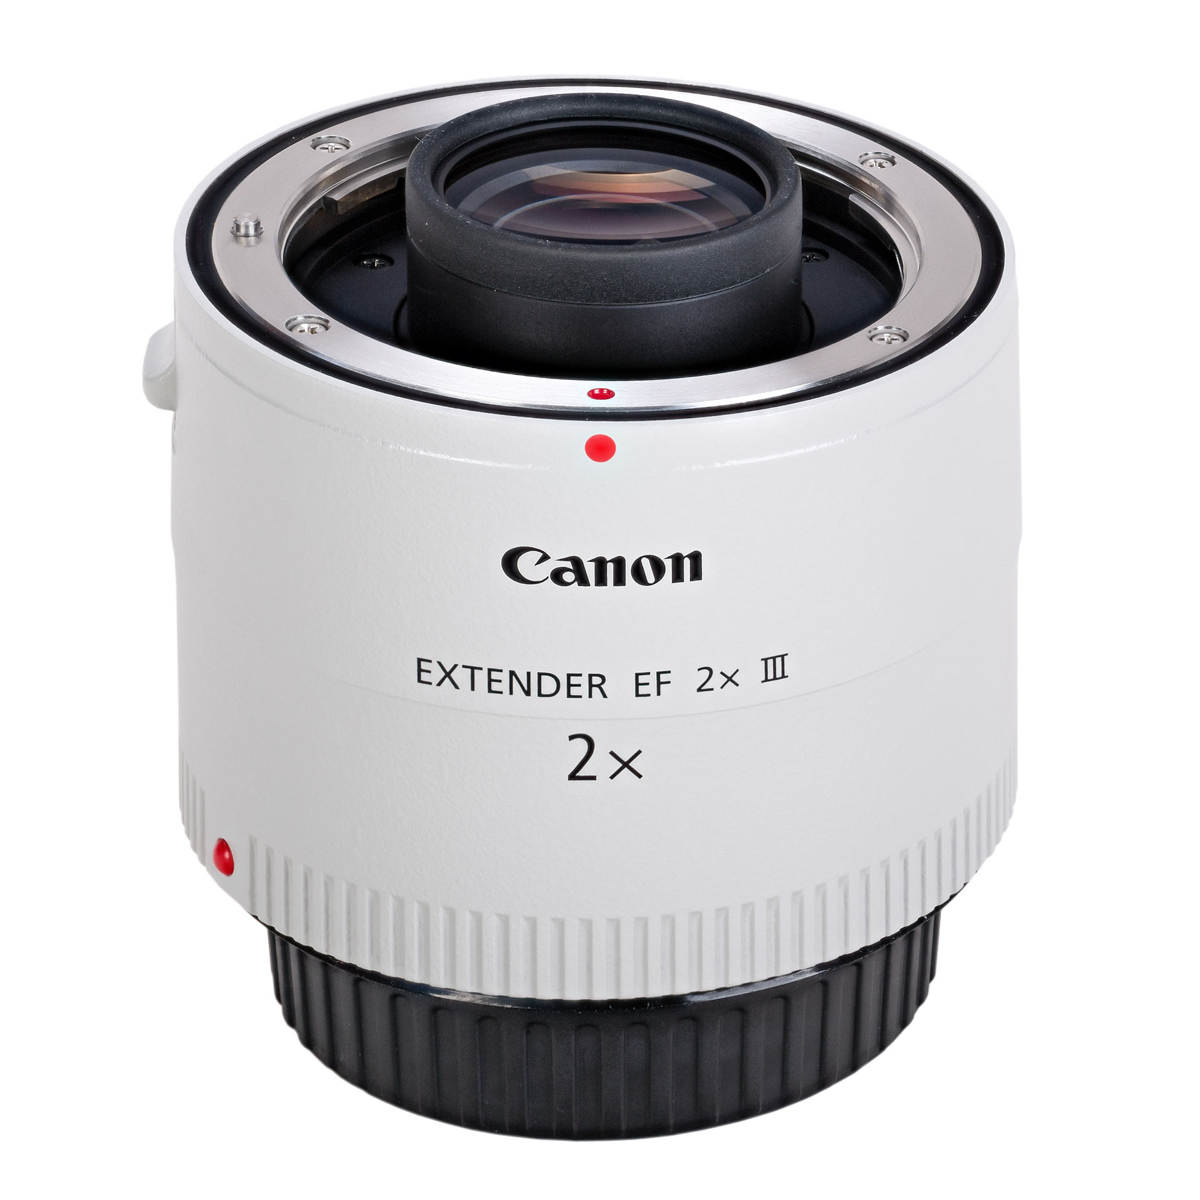 Canon extender エクステンダー 2.0 III型 - rehda.com